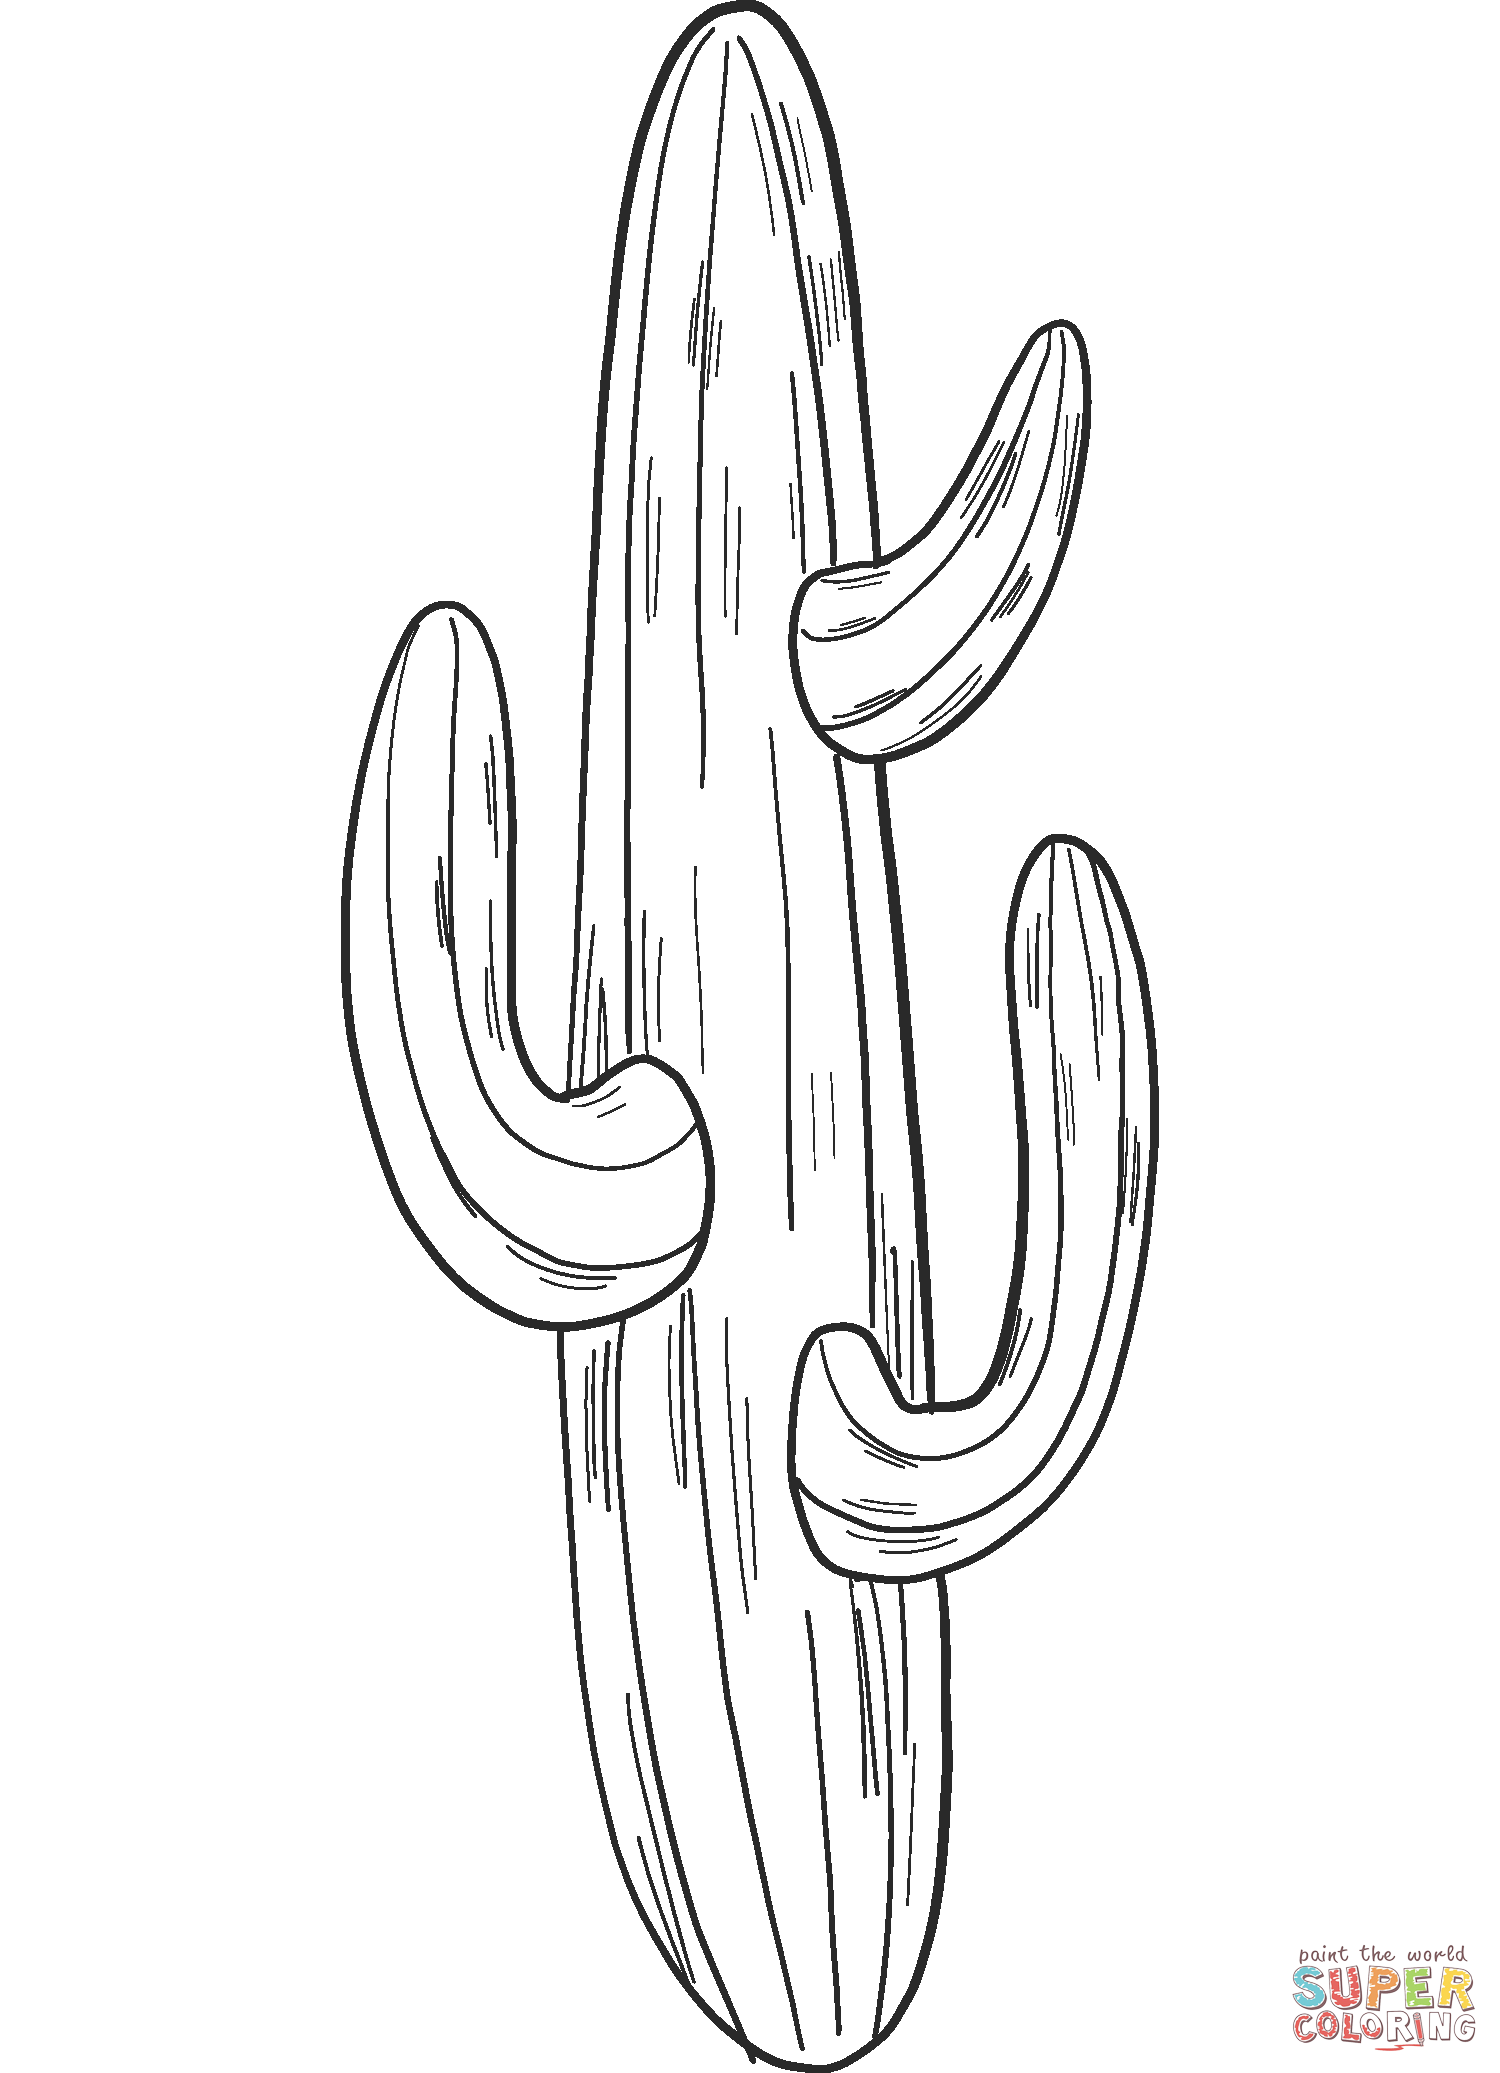 Cactus dal cactus